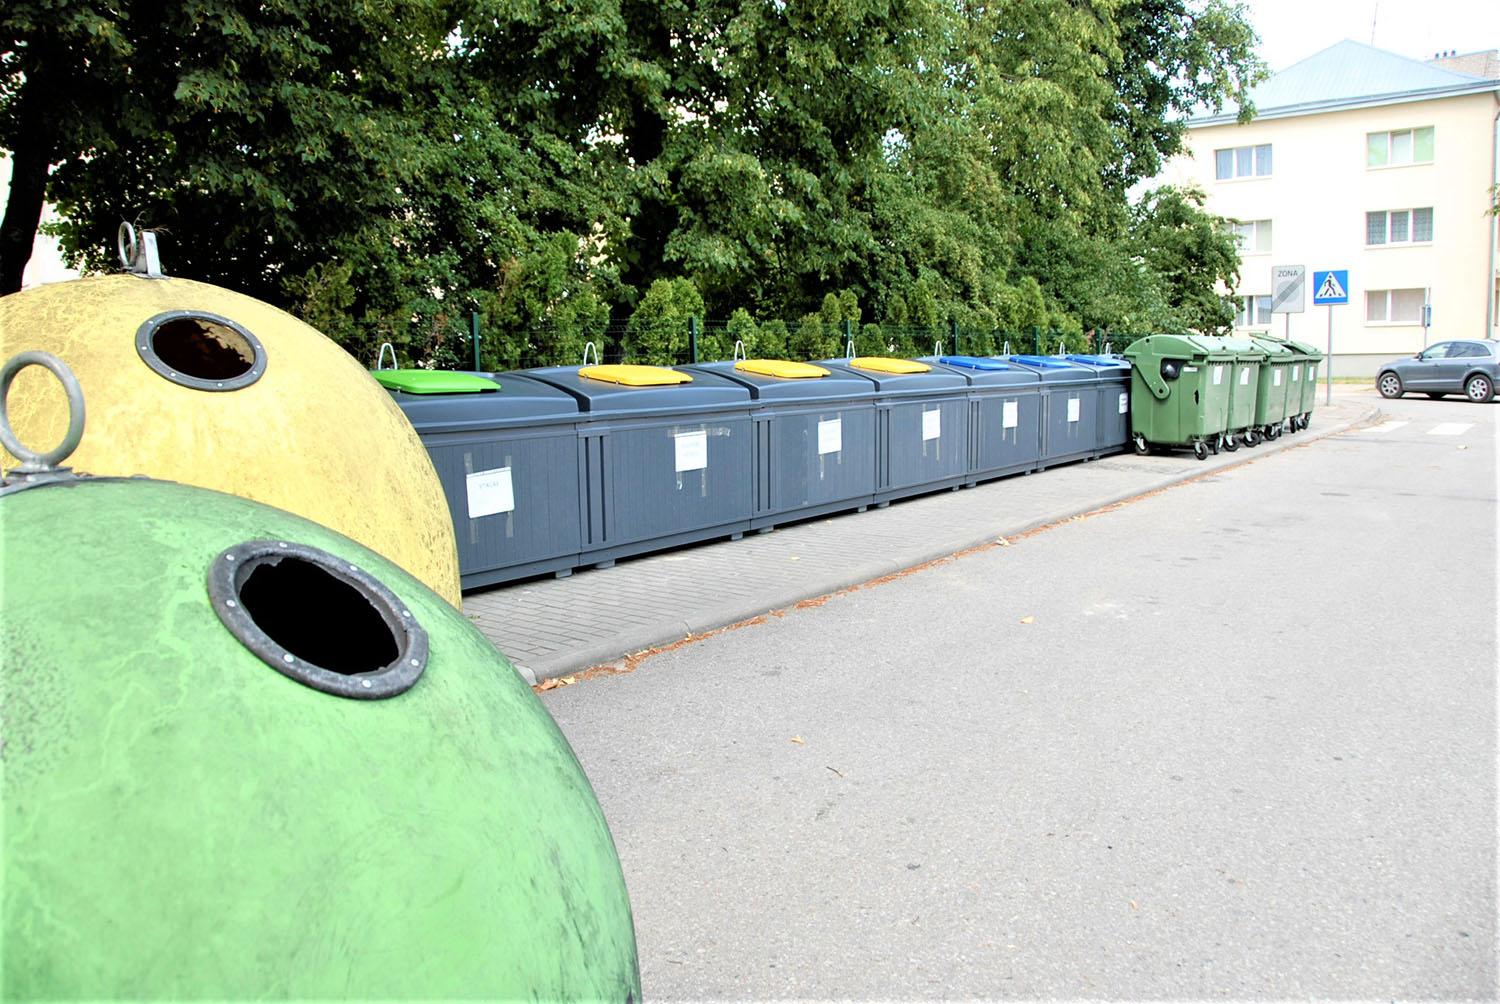 Atliekų tvarkytoju siūlo skirti Ukmergės autobusų parką / Komunalinių atliekų surinkimo ir išvežimo paslaugą dabartinis jos teikėjas pasiūlė nutraukti.  Gedimino Nemunaičio nuotr.